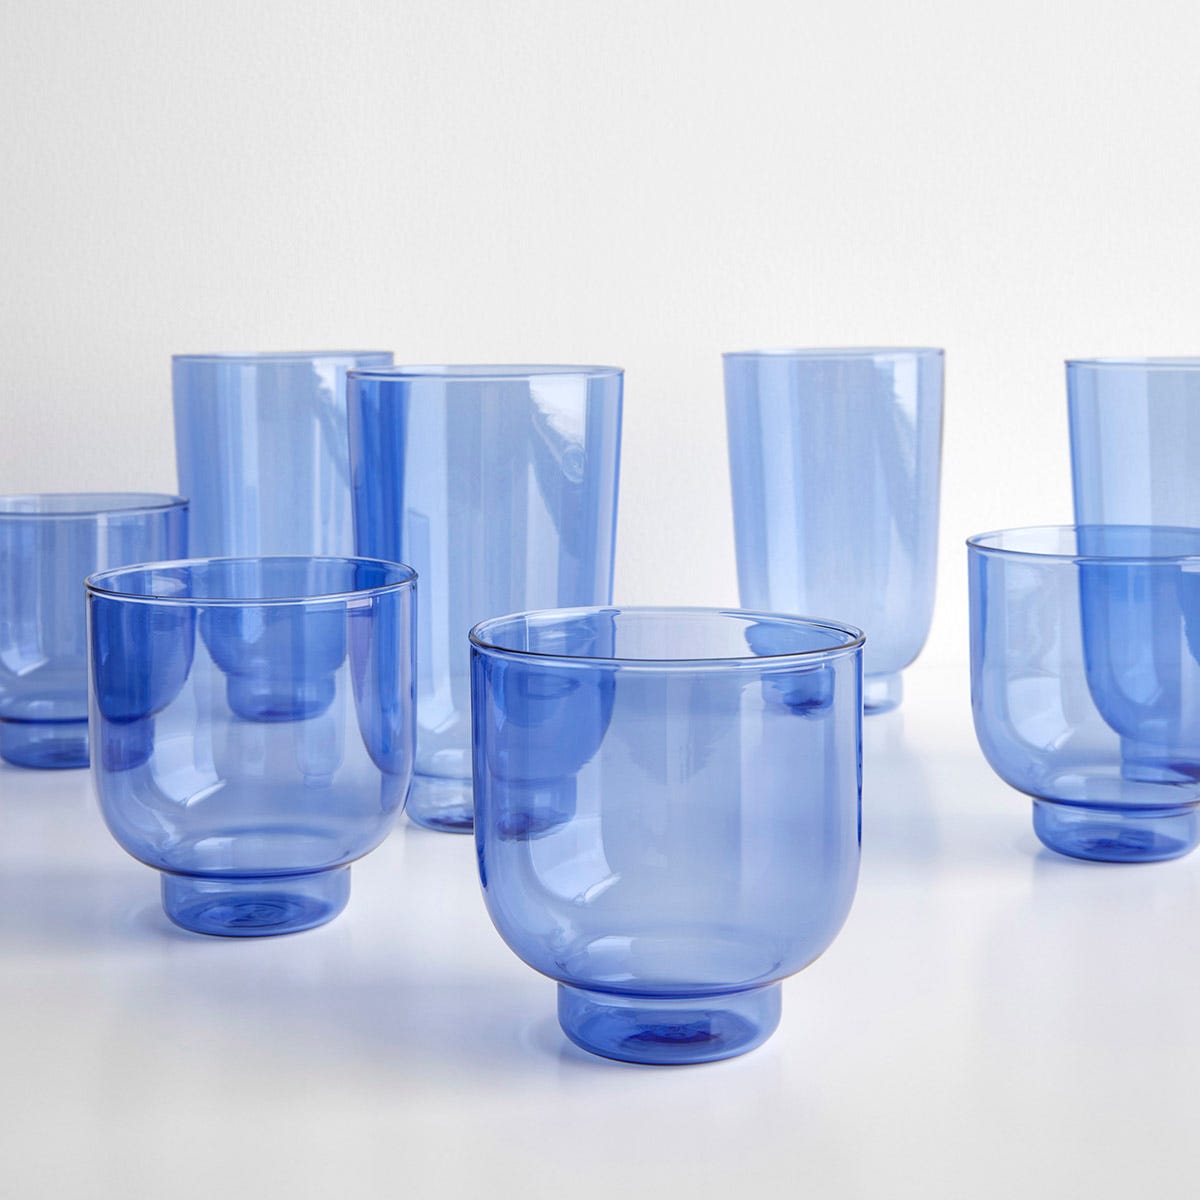 Departo Blue Glassware